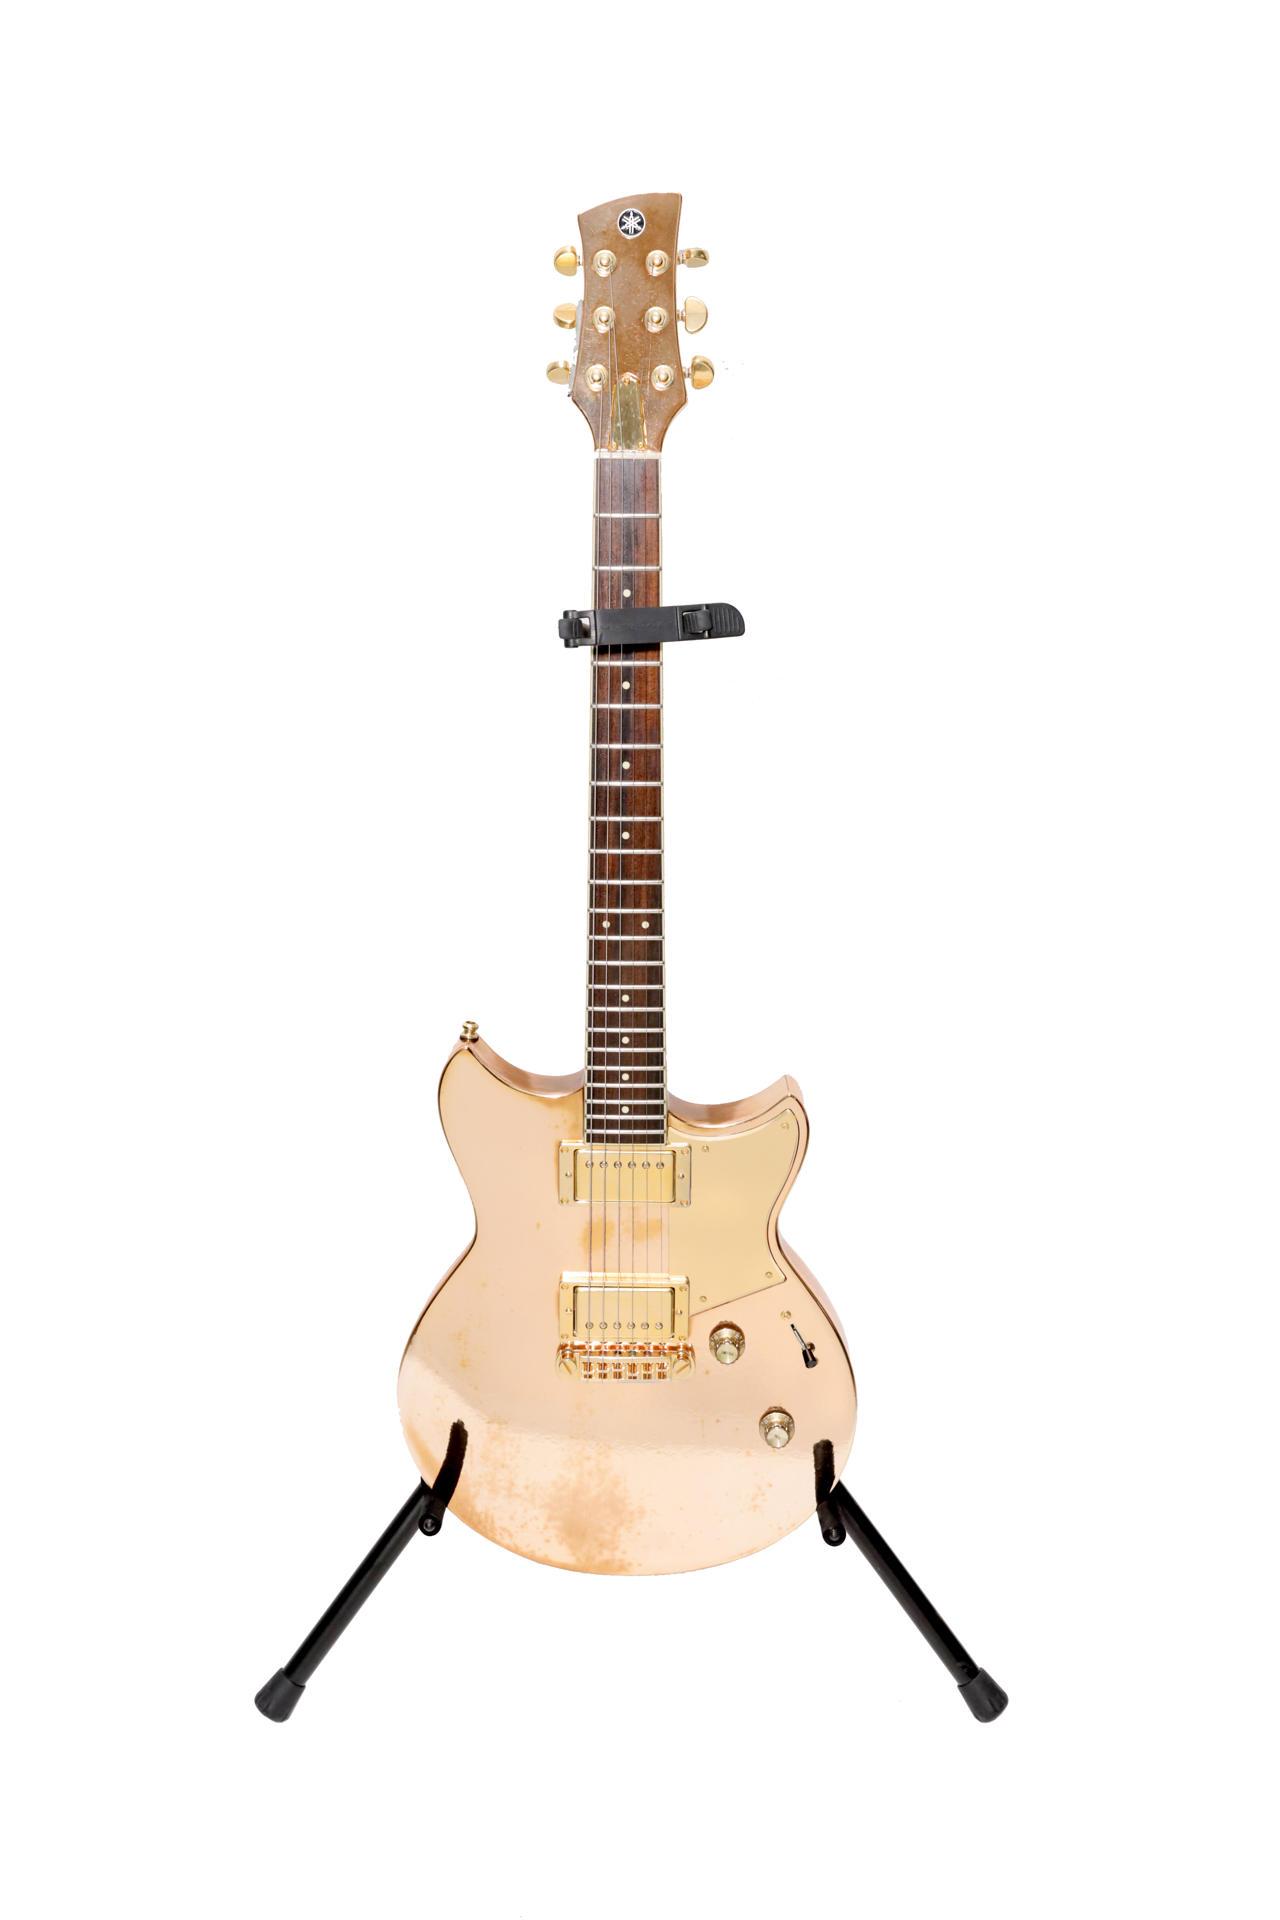 Fotografía muestra la guitarra eléctrica Yamaha Revstar dorada usada por Shakira en la gira El Dorado.